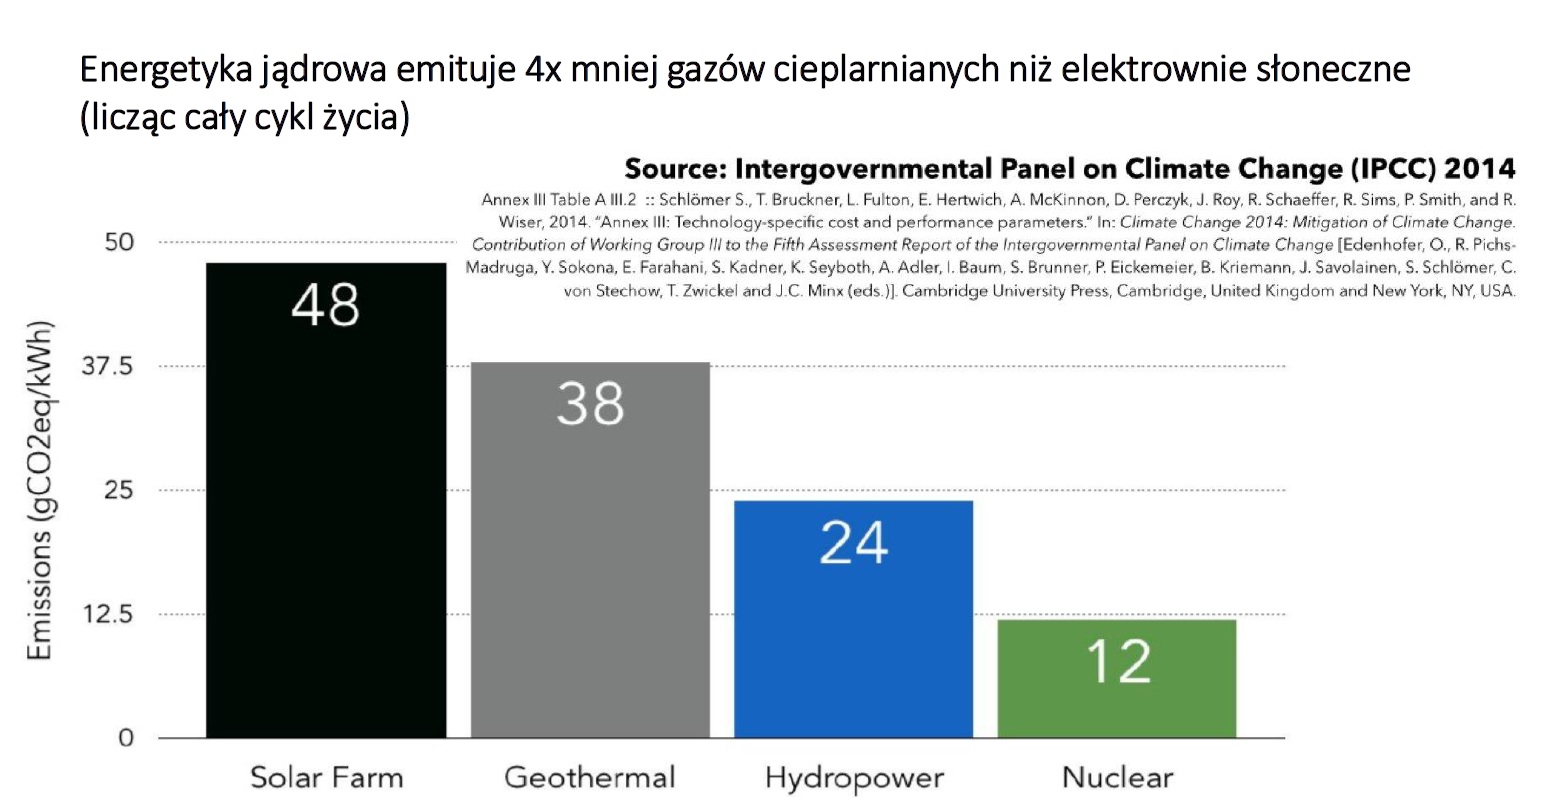 Emisje CO2 z poszczególnych rodzajów energetyki. Grafika: Prezentacja "Klimat a energetyka jądrowa” autorstwa Józefa Sobolewskiego